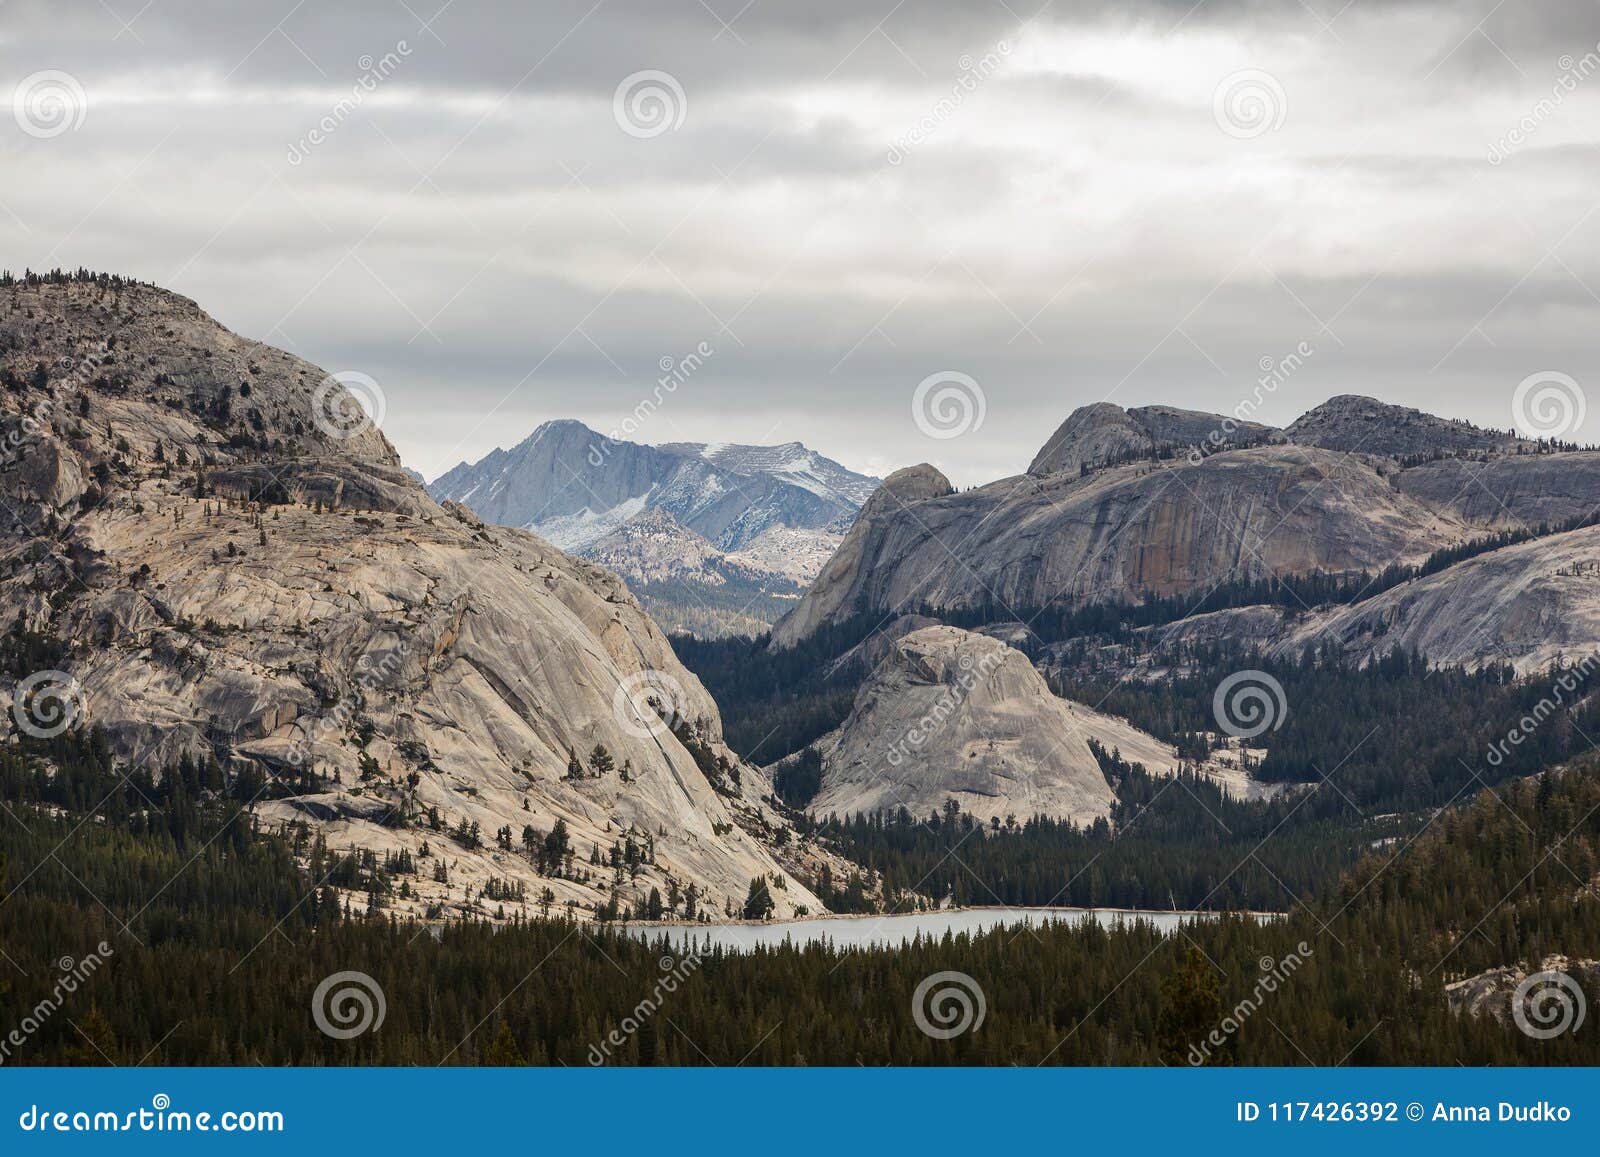 yosemite national park in californa